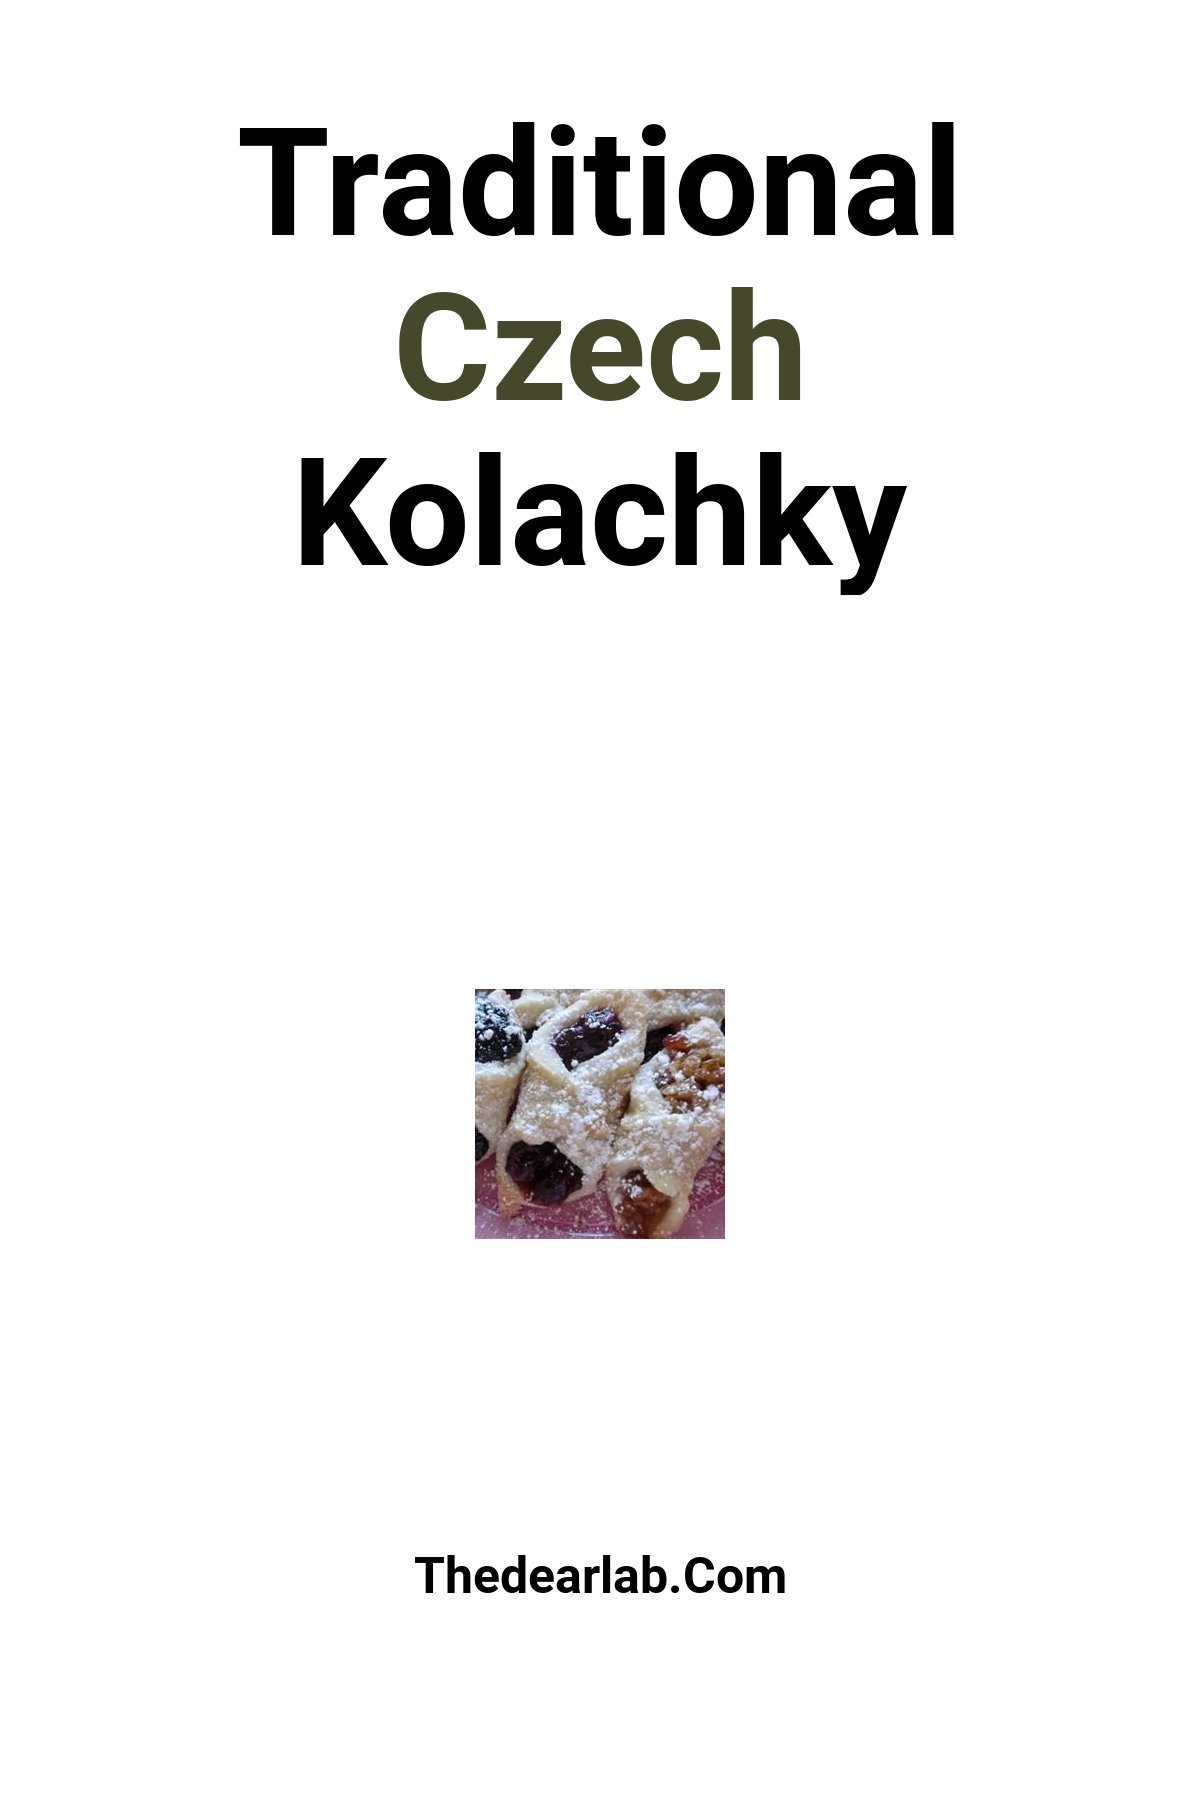 Kolachky